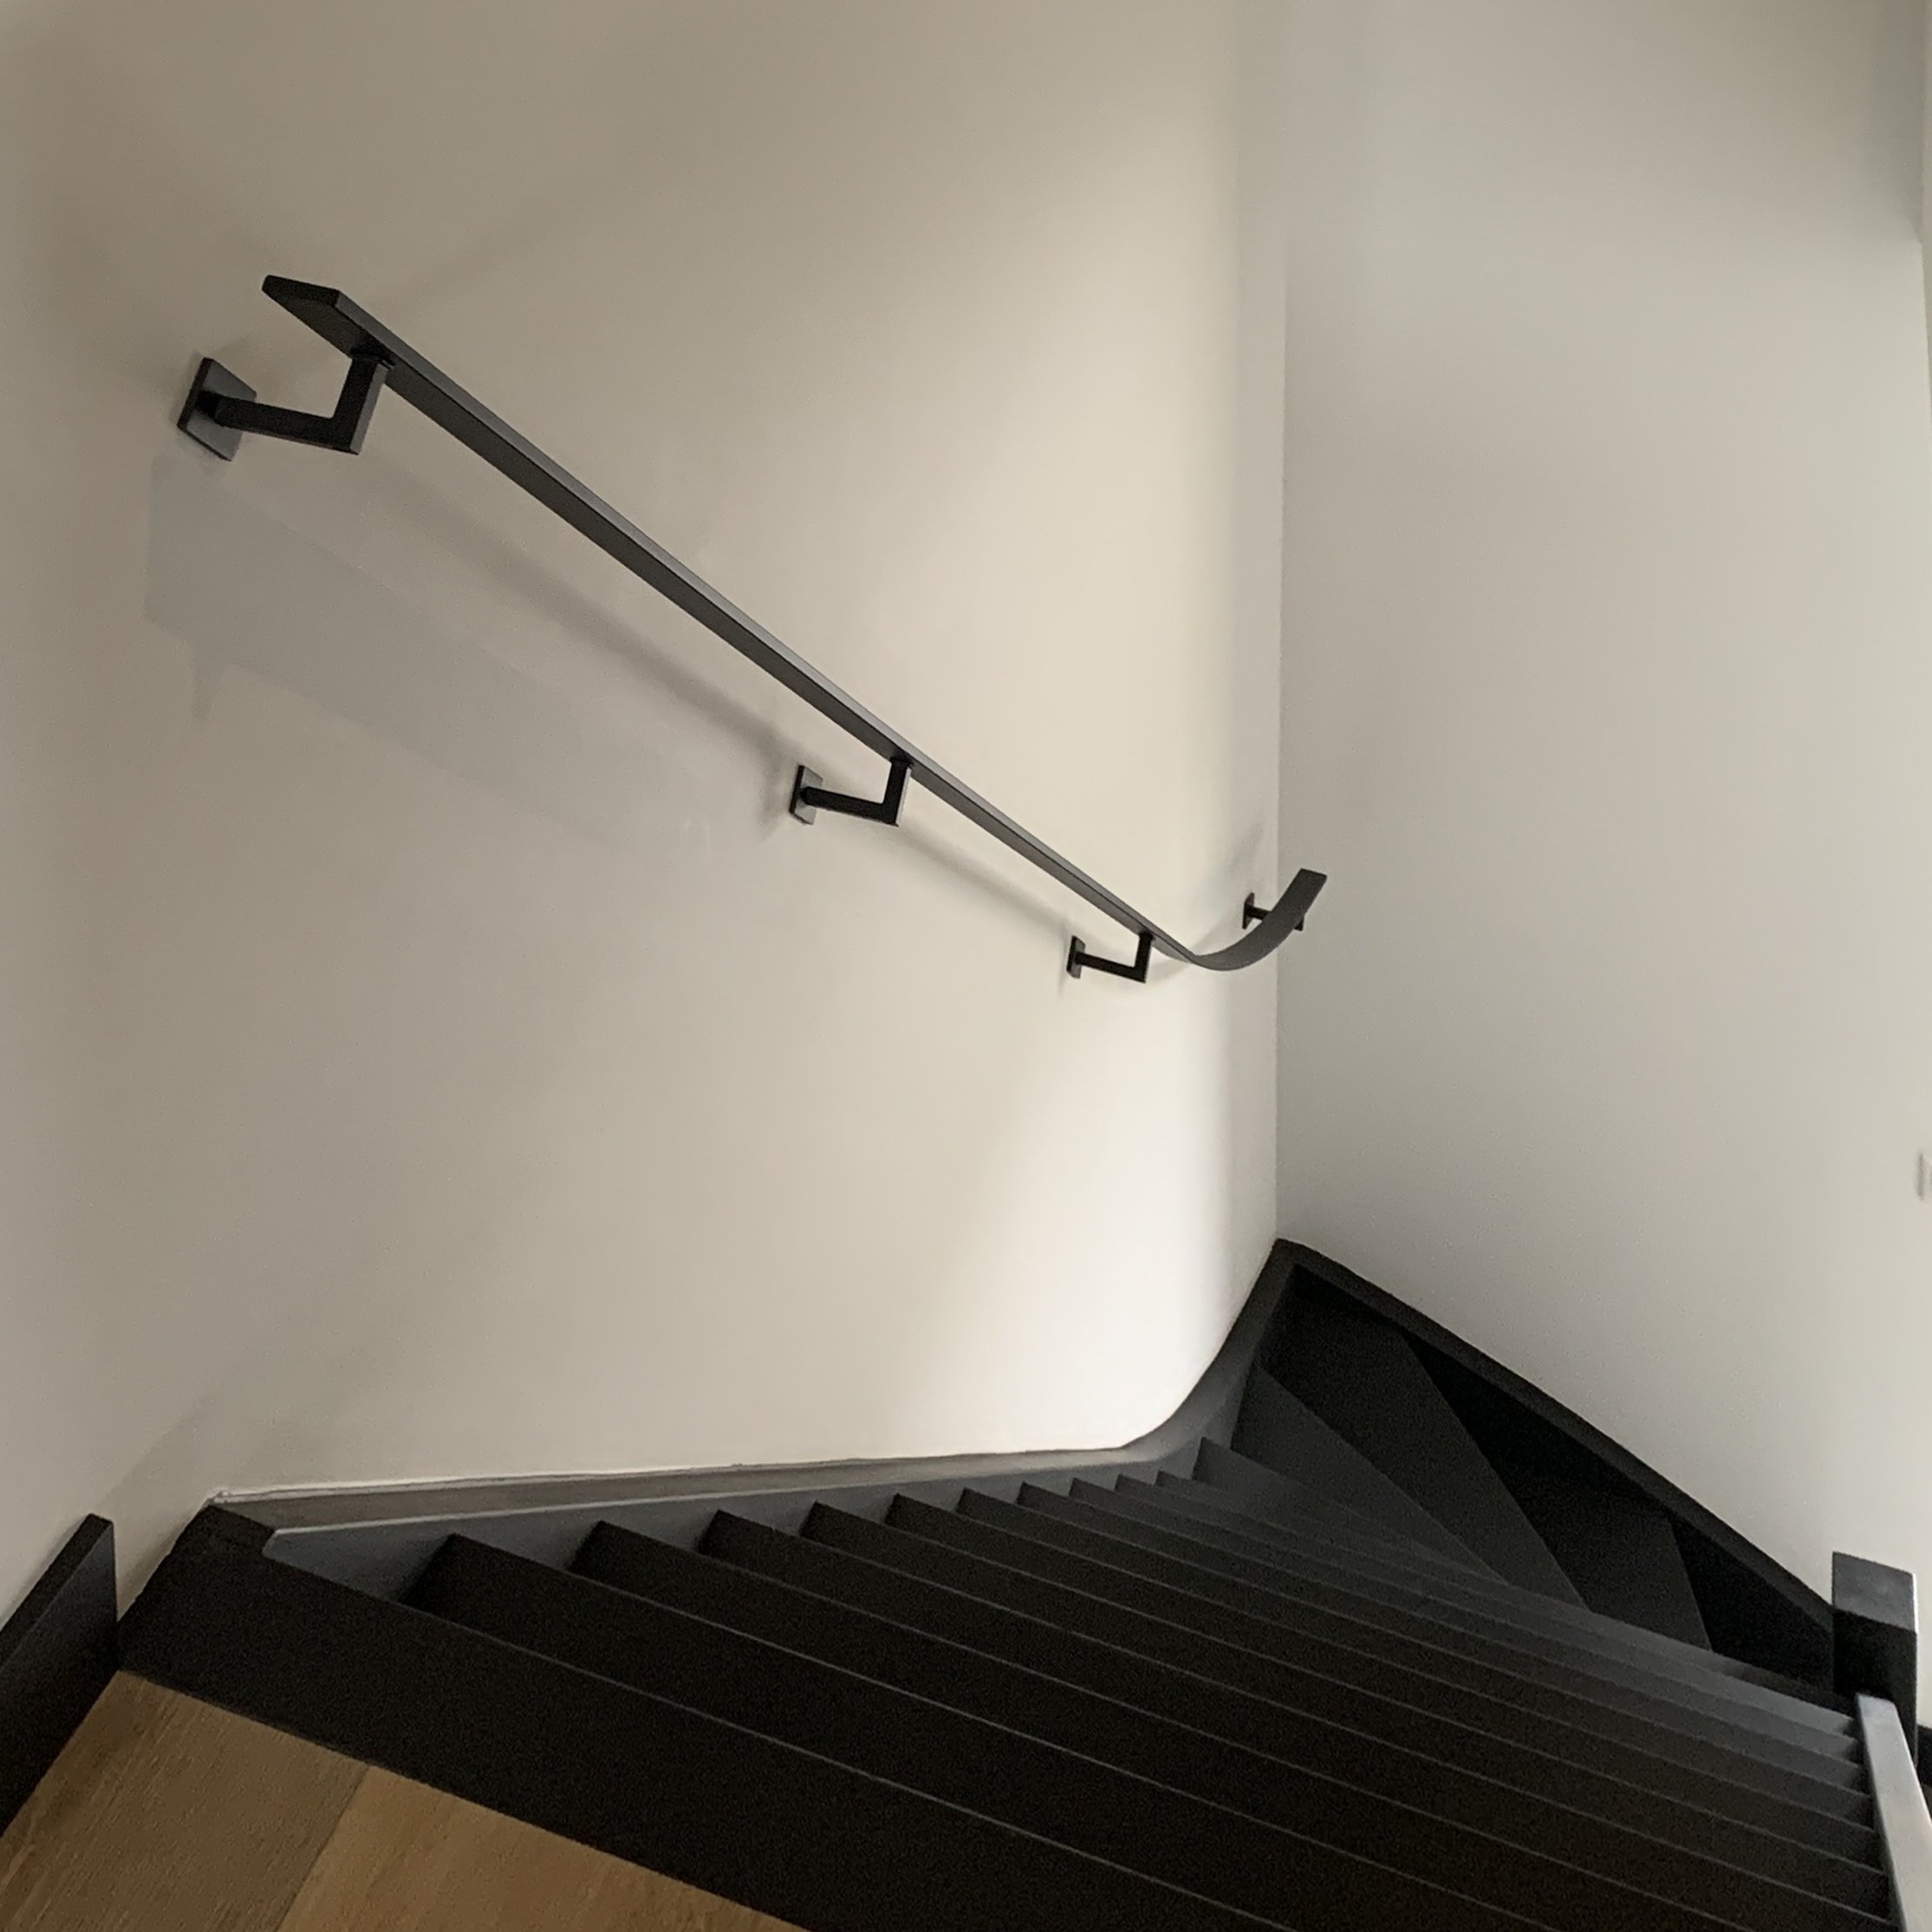  Handlauf schwarz beschichtet viereckig 40x10 Modell 11 - Rechteckige Treppengeländer - Treppenhandlauf mit schwarzer Pulverbeschichtung RAL 9005